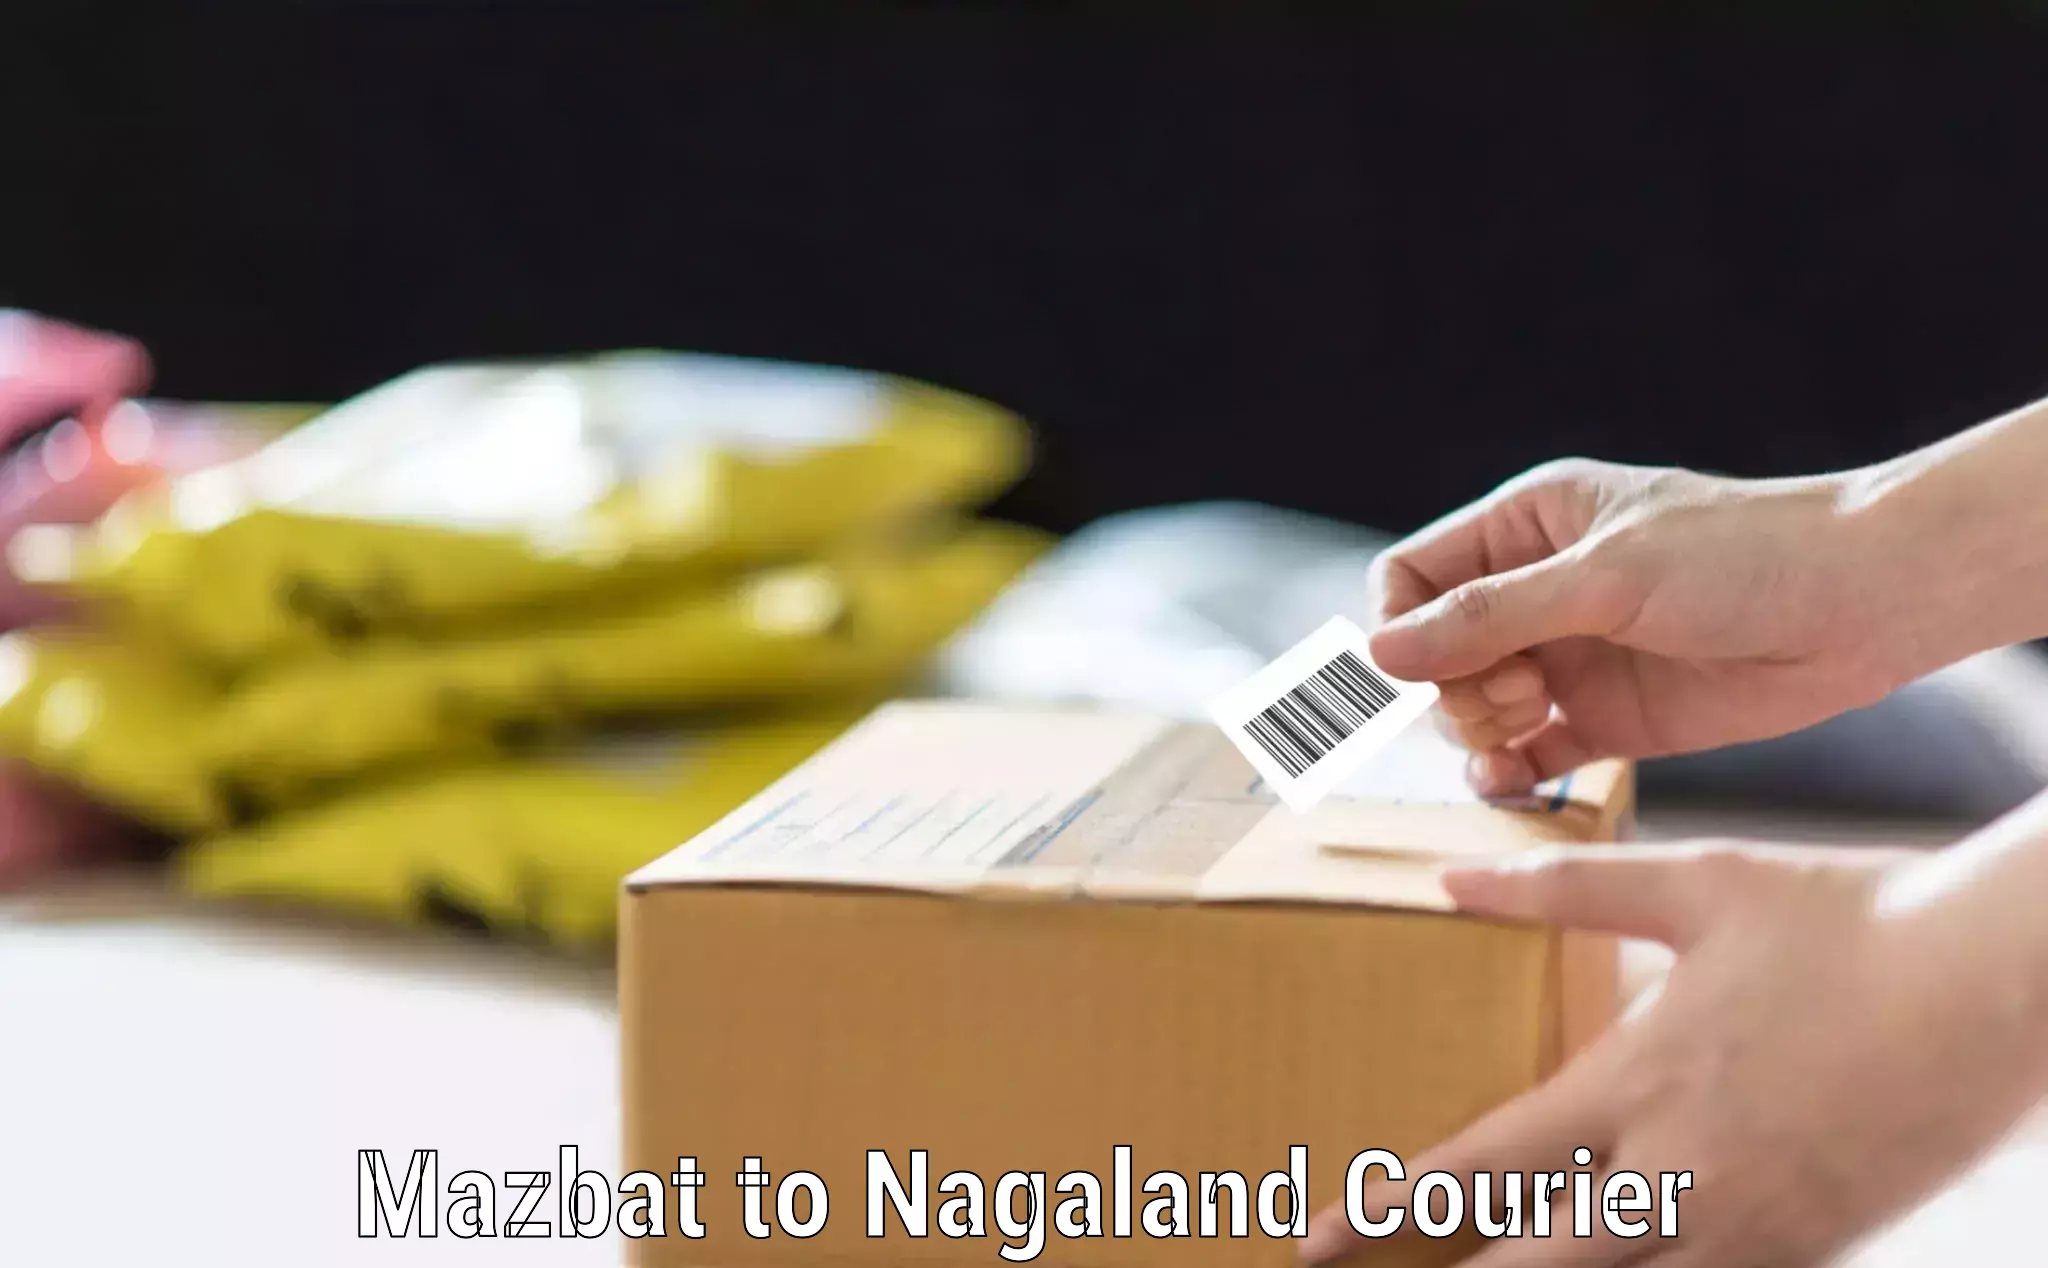 Luggage shipment tracking Mazbat to Nagaland